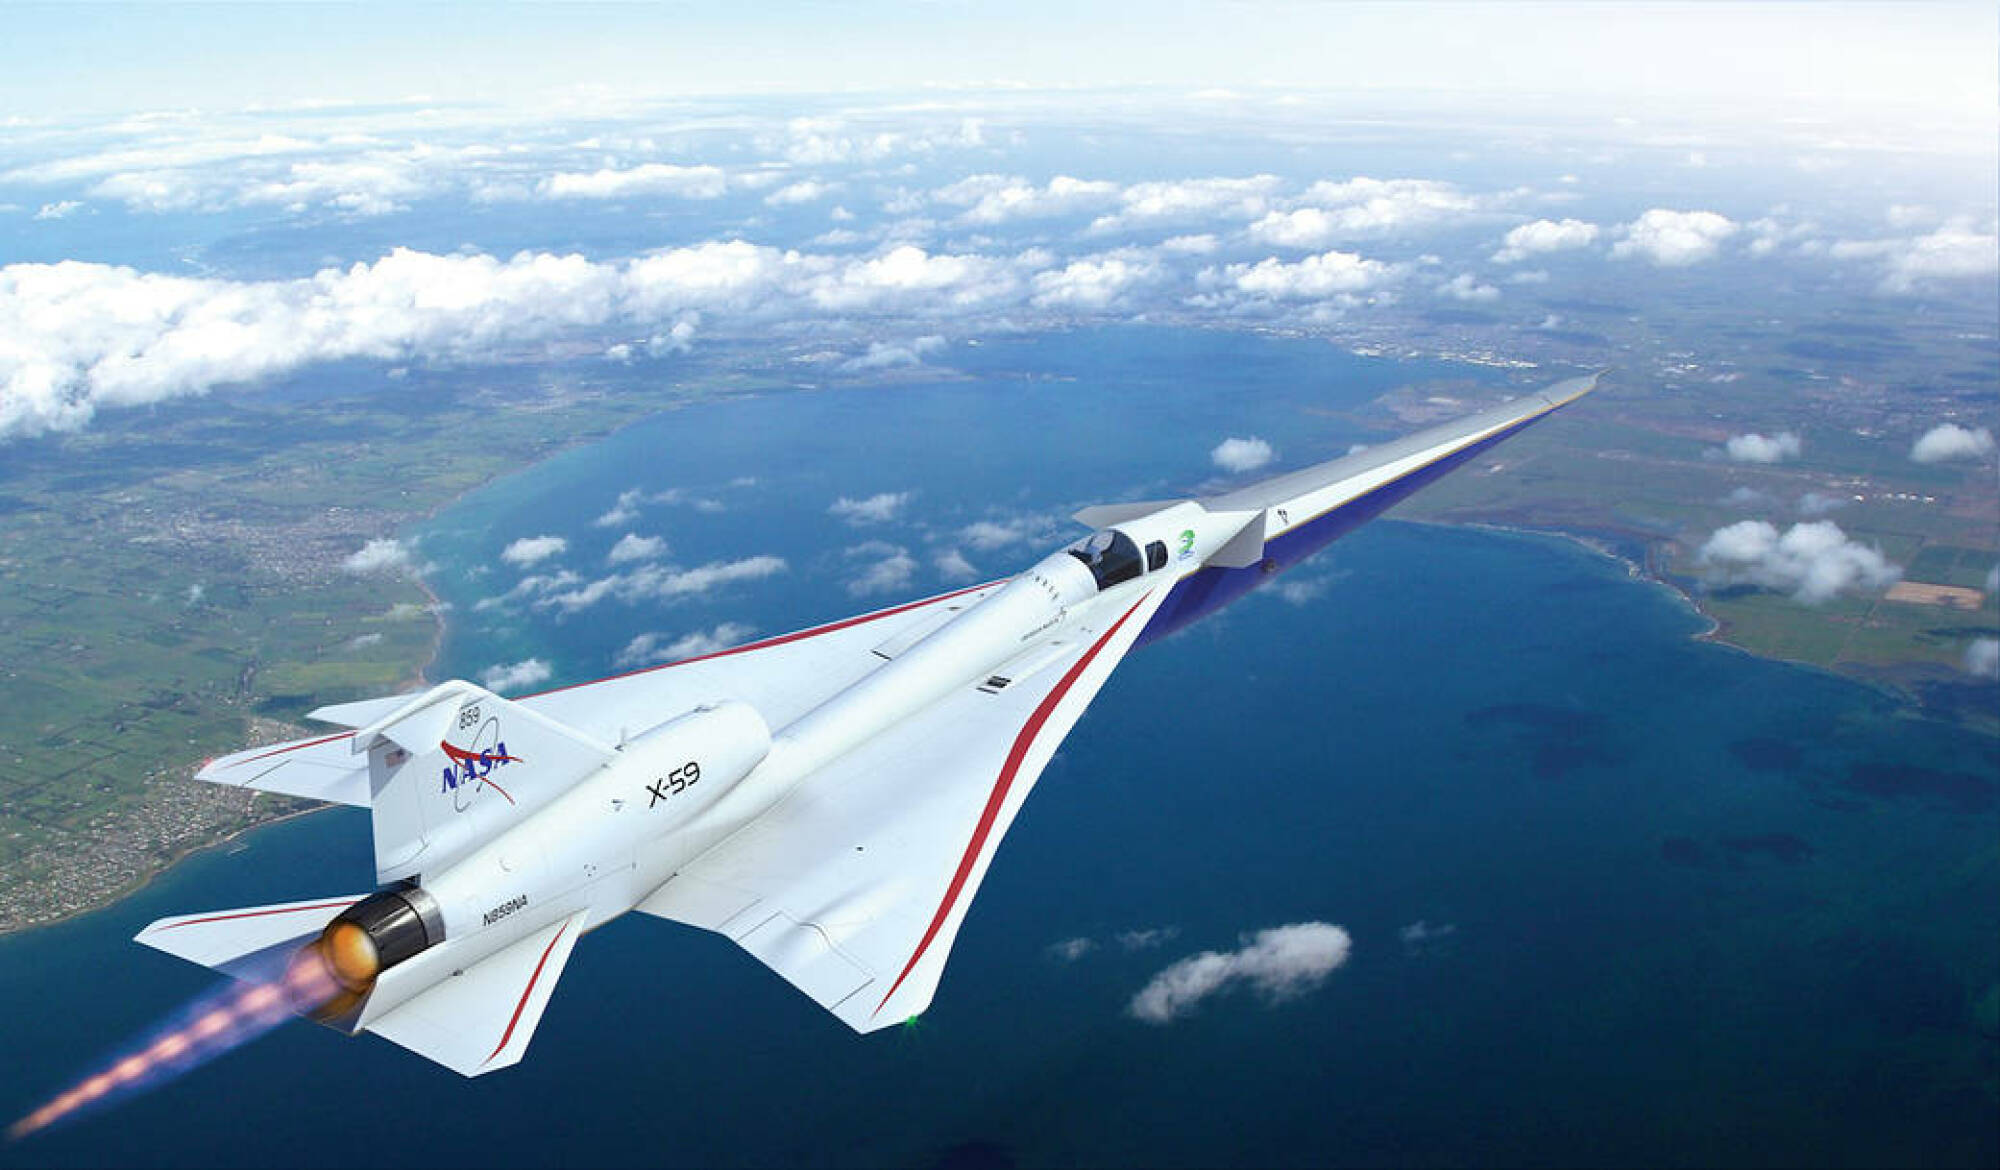 Vue d'artiste de l'avion X-59 lors d'un vol d'essai au-dessus des terres américaines